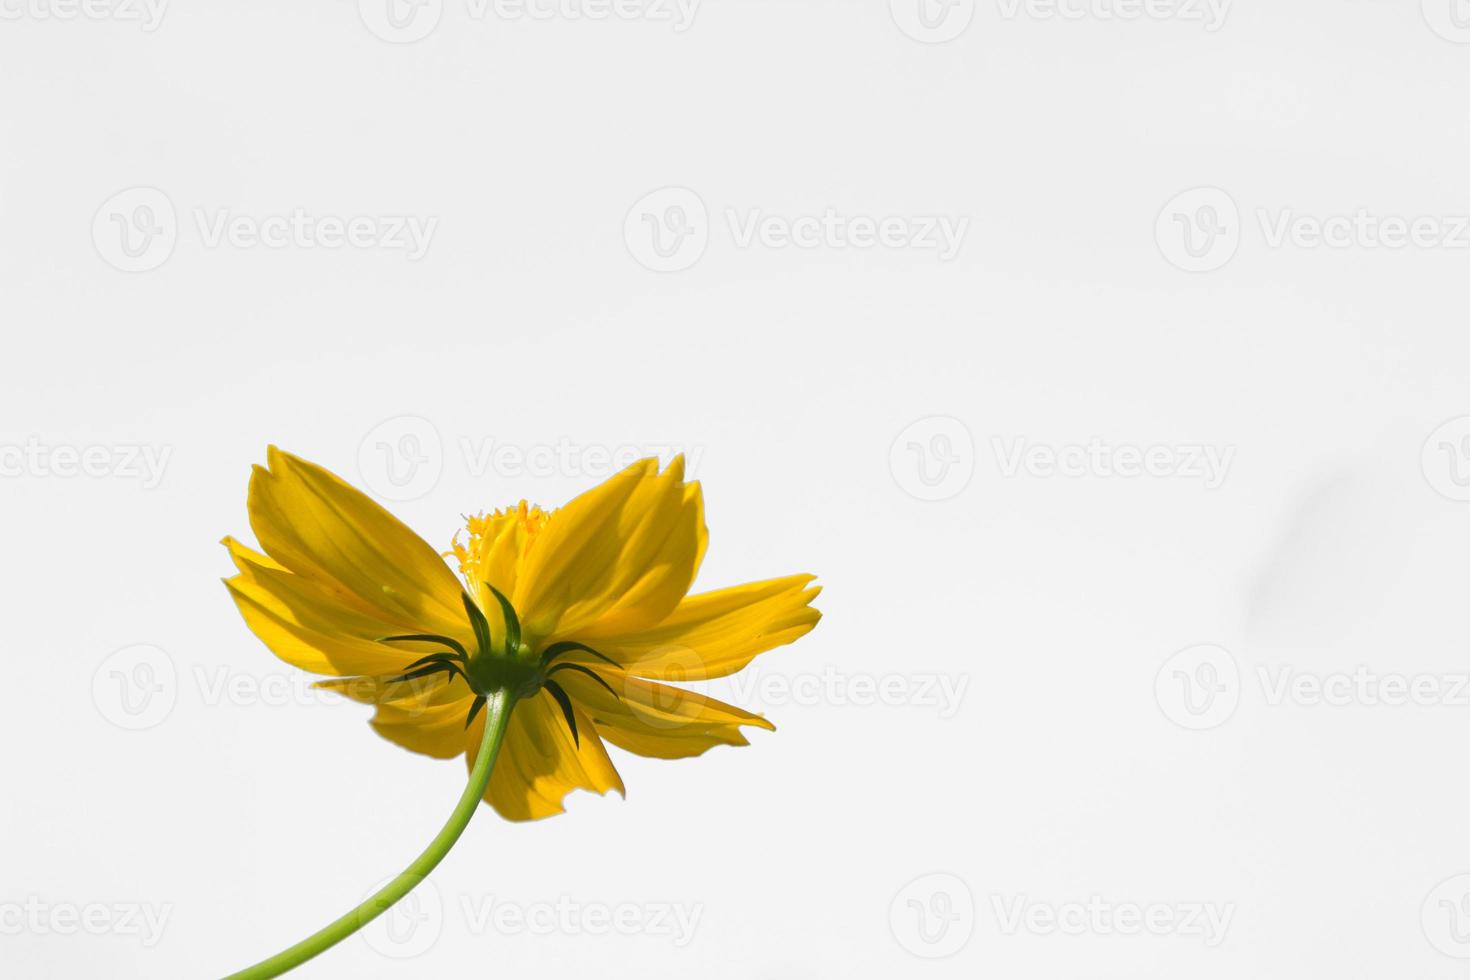 hermosas flores amarillas de estallido o flores cosmos en la naturaleza sobre un fondo blanco, en la naturaleza un color amarillo claro, mucho espacio para escribir y hacer un cartel. foto